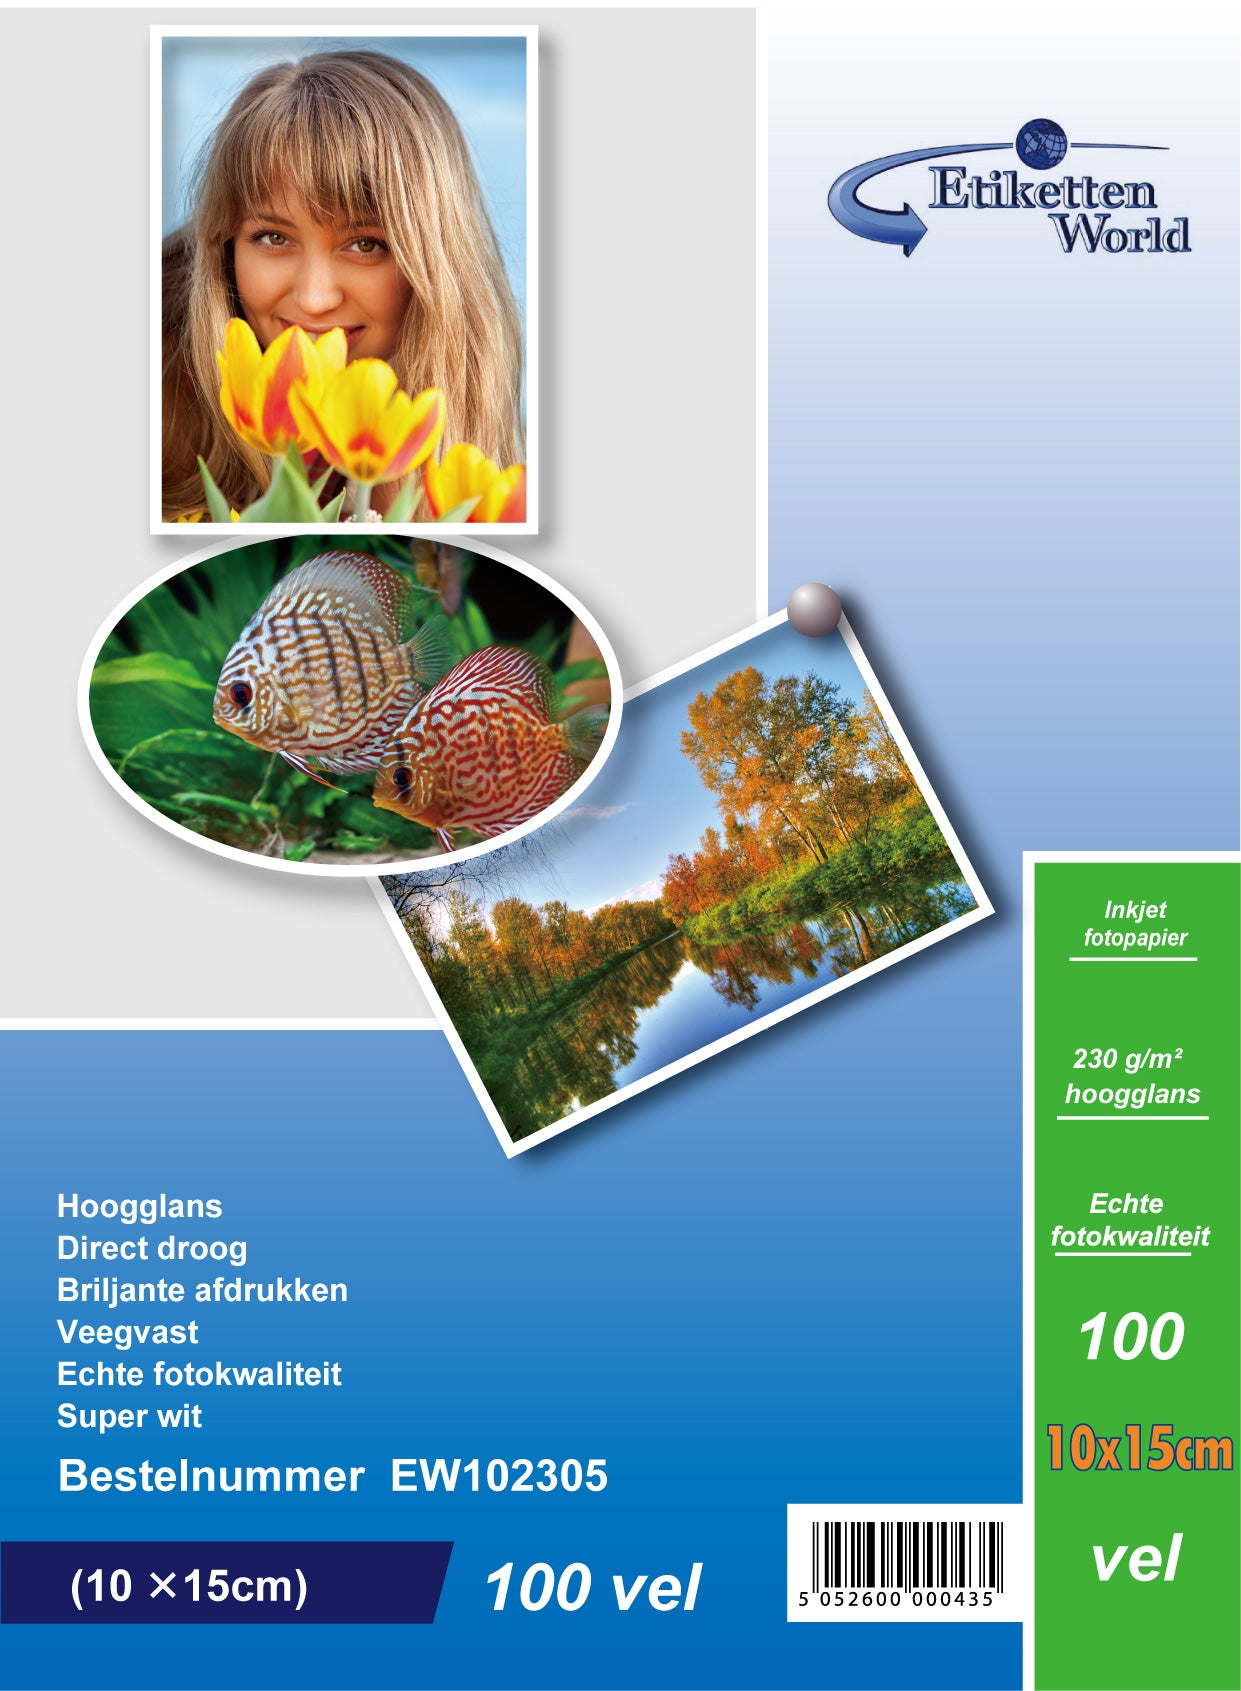 100 Blatt EtikettenWorld BV Fotopapier/ Fotokarten  10x15 cm 230g/qm High Glossy und wasserfest